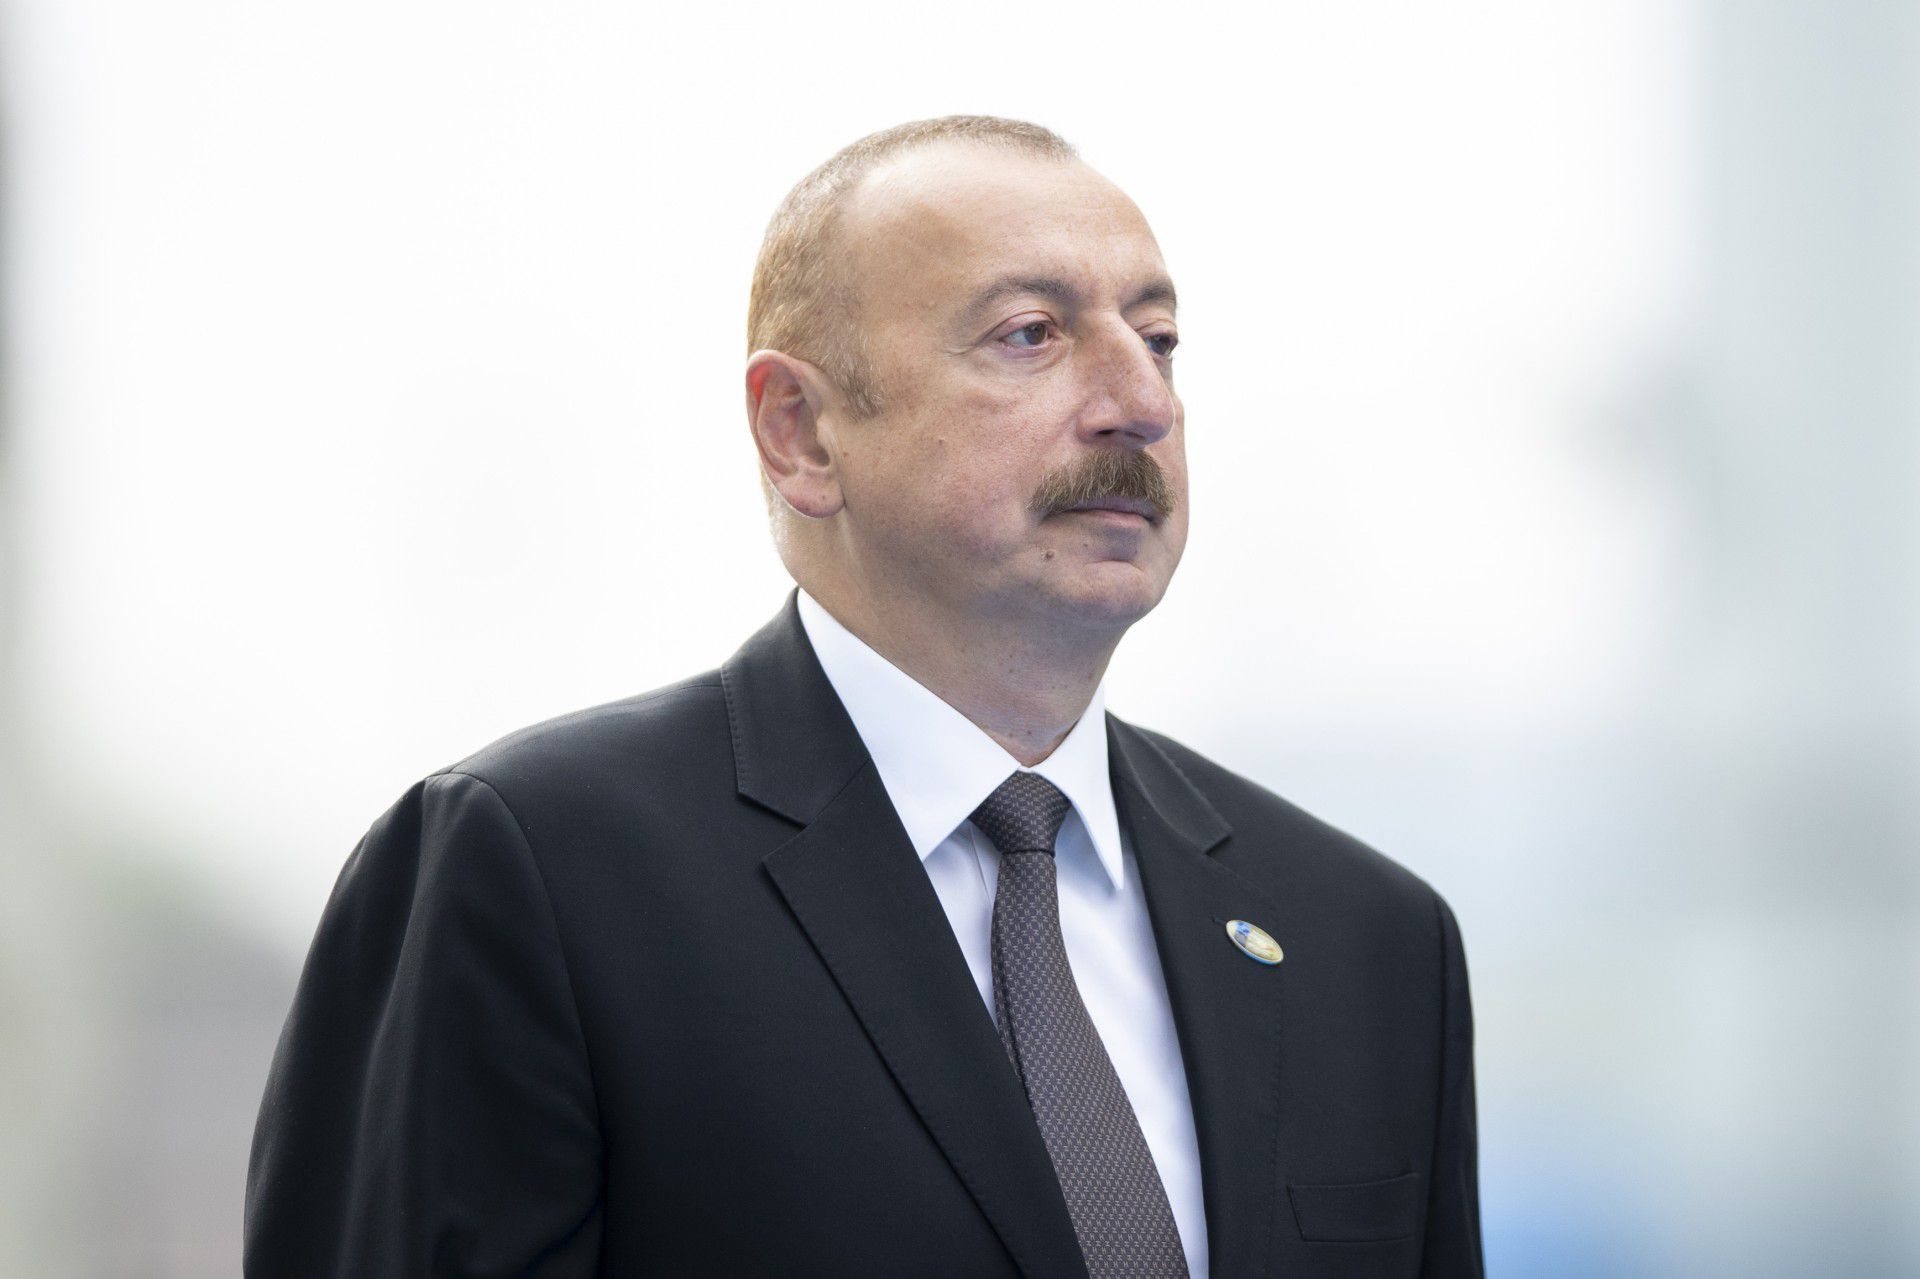 阿塞拜疆现任总统阿利耶夫的家族从1993年开始就执掌这个纳卡战争惨败的国家，阿塞拜疆在1988年后的32年间也一直不忘复仇。随着阿塞拜疆有望通过停战协议，确保收复纳卡近八成领土，阿塞拜疆全国已一片欢腾。（Getty）